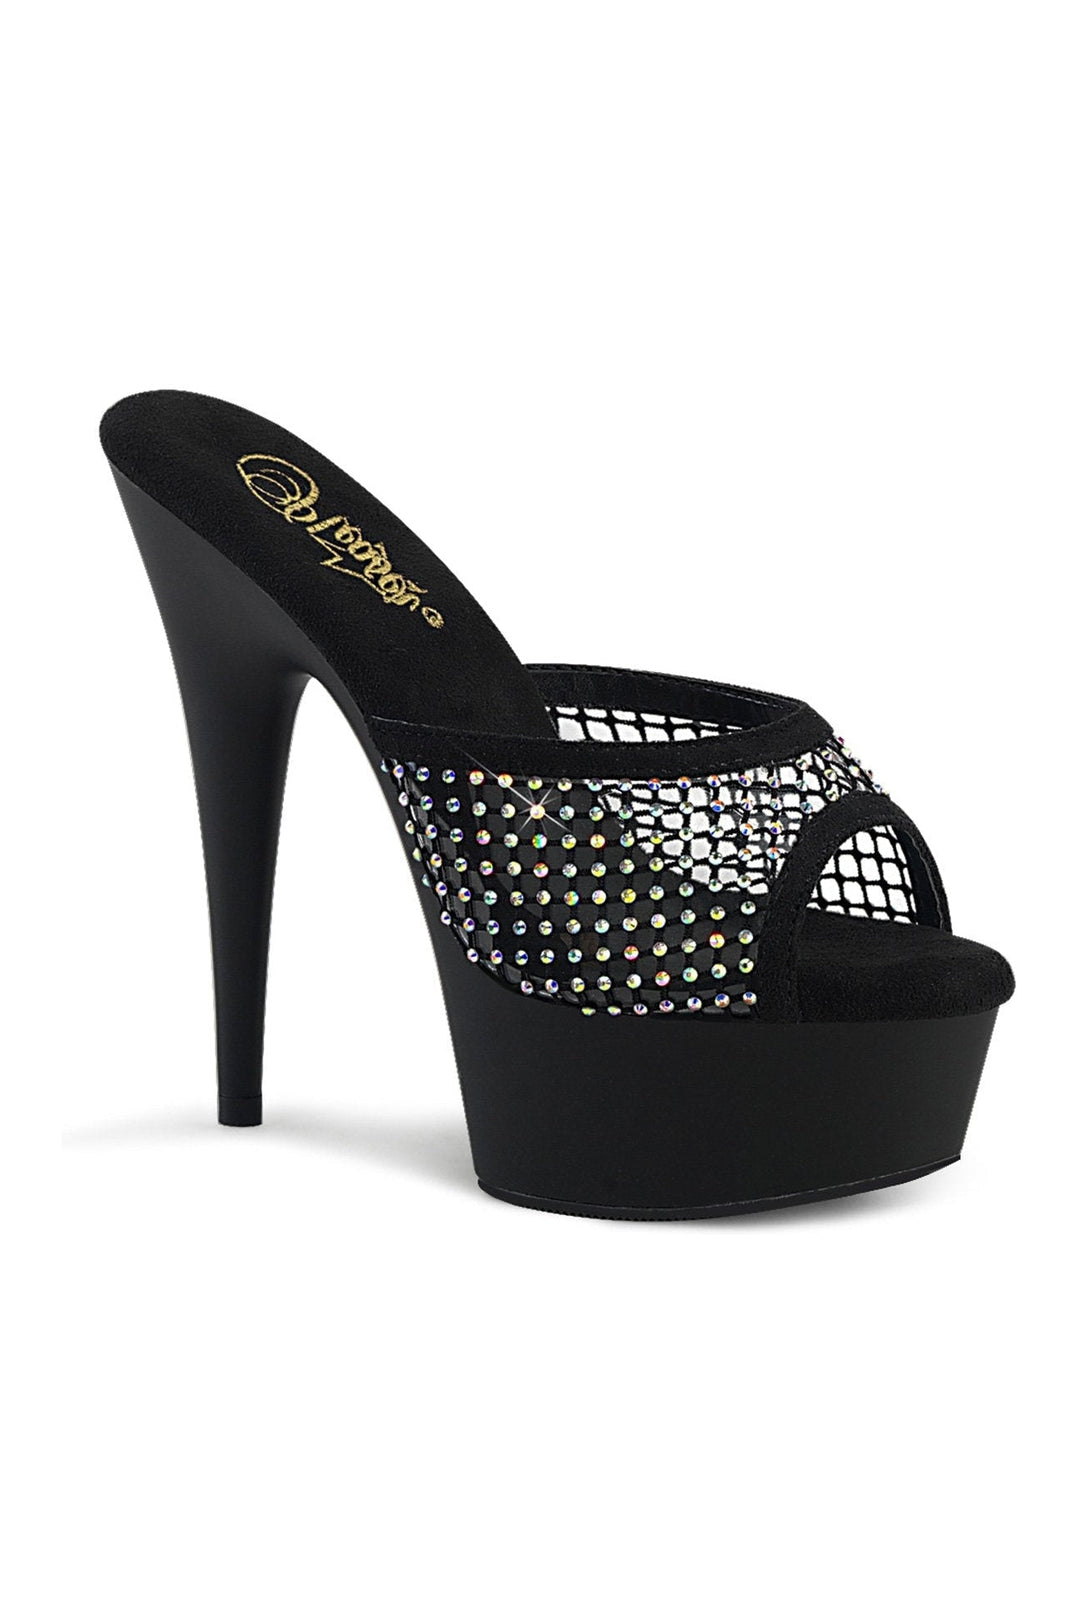 Pleaser Black Slides Platform Stripper Shoes | Buy at Sexyshoes.com